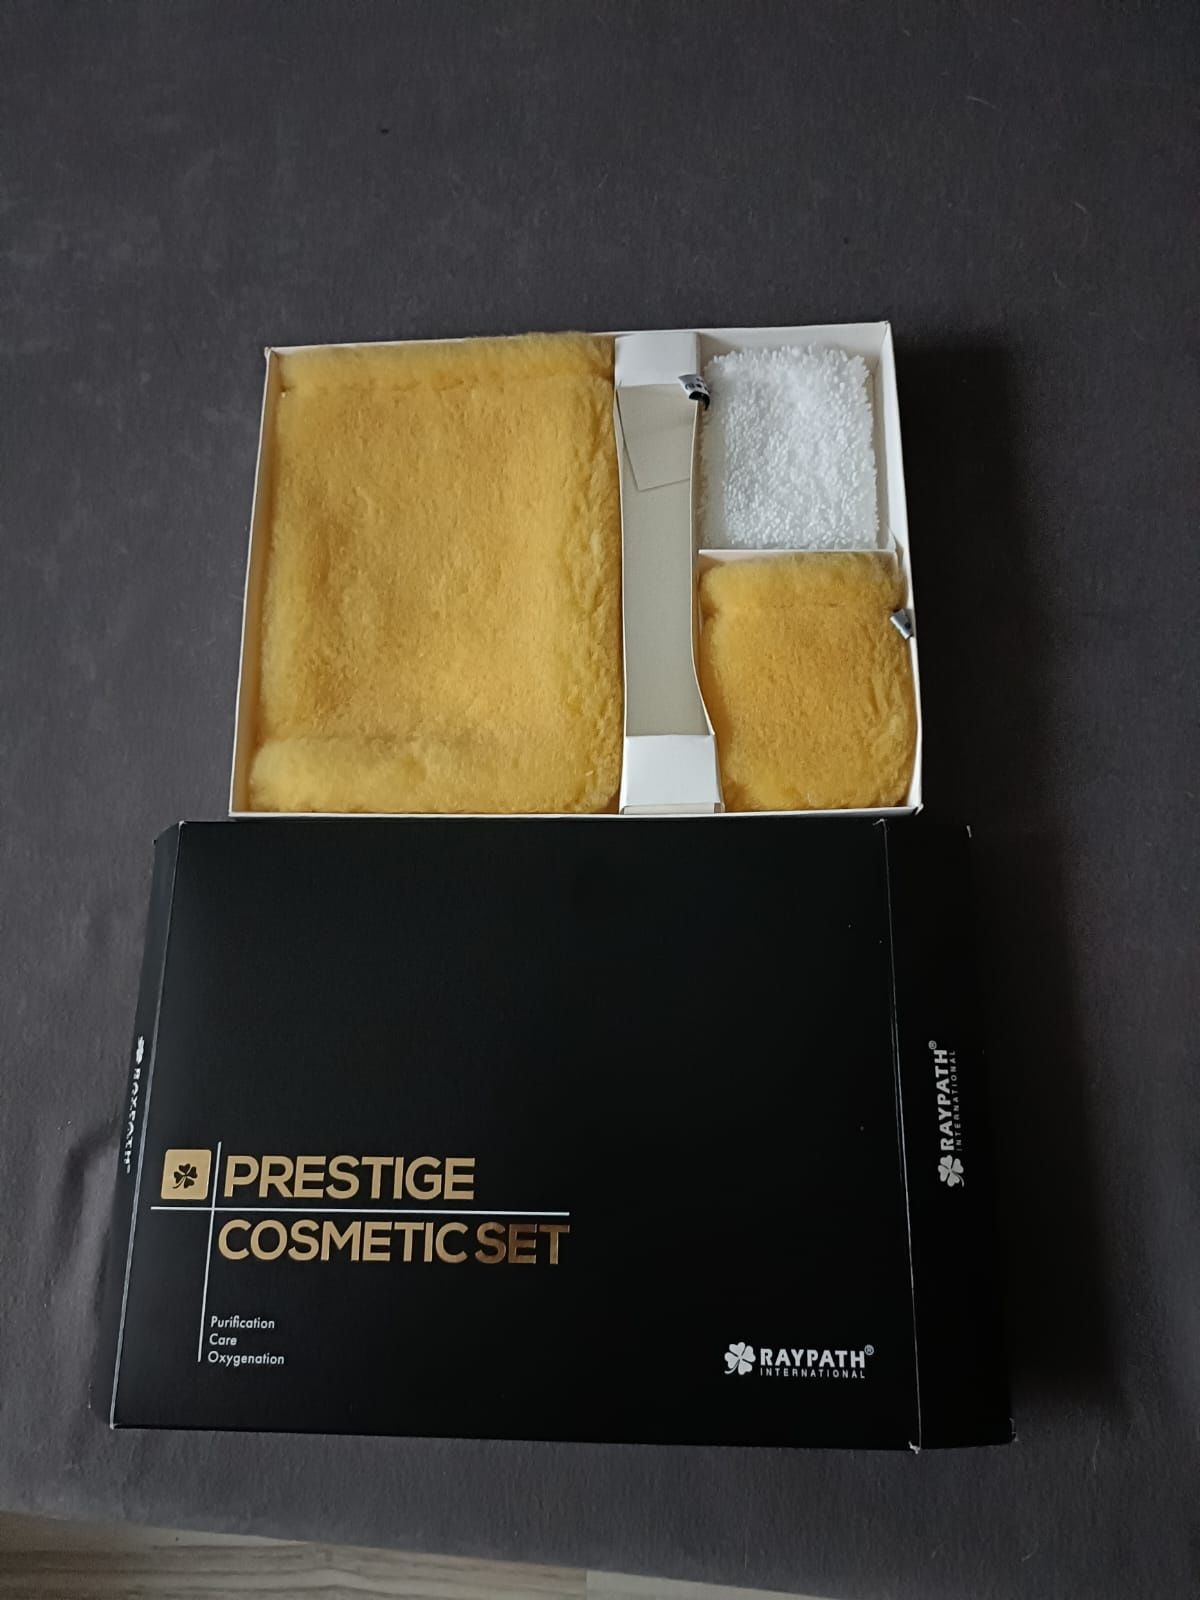 Zestaw do pielęgnacji twarzy i ciała Raypath Prestige Cosmetic Set